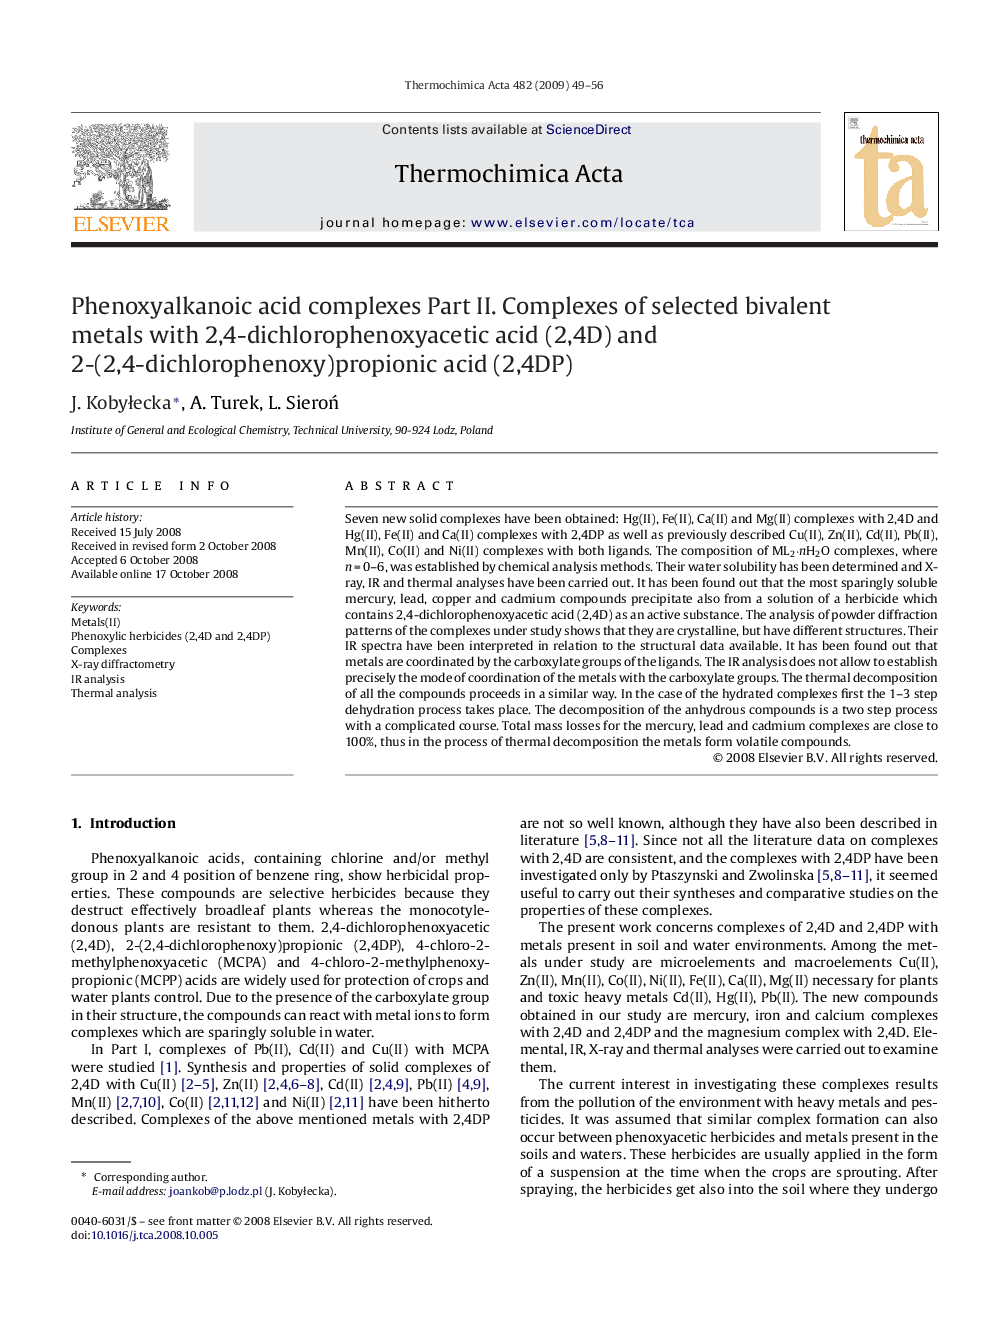 Phenoxyalkanoic acid complexes: Part II. Complexes of selected bivalent metals with 2,4-dichlorophenoxyacetic acid (2,4D) and 2-(2,4-dichlorophenoxy)propionic acid (2,4DP)